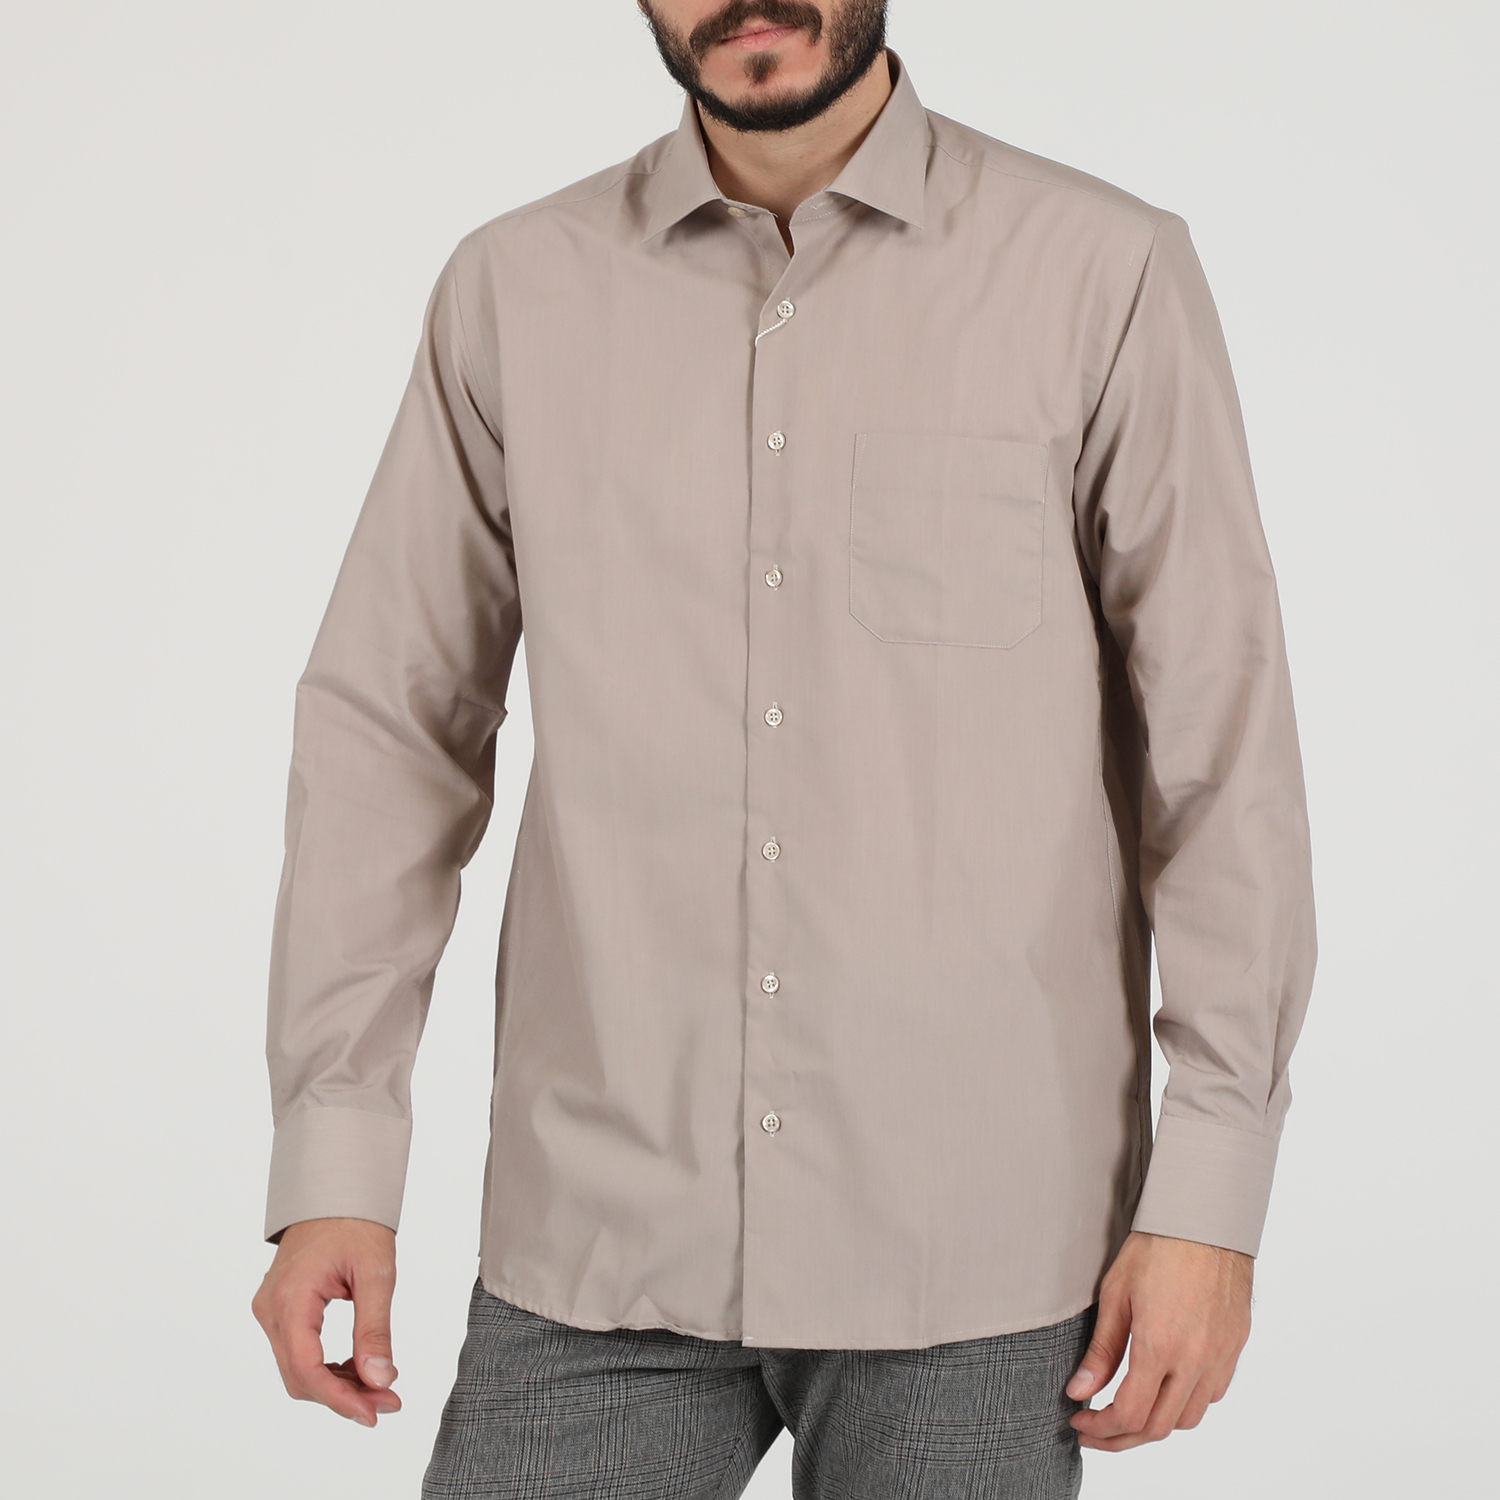 Ανδρικά/Ρούχα/Πουκάμισα/Μακρυμάνικα MARTIN & CO - Ανδρικό πουκάμισο MARTIN & CO Regular Fit εκρού